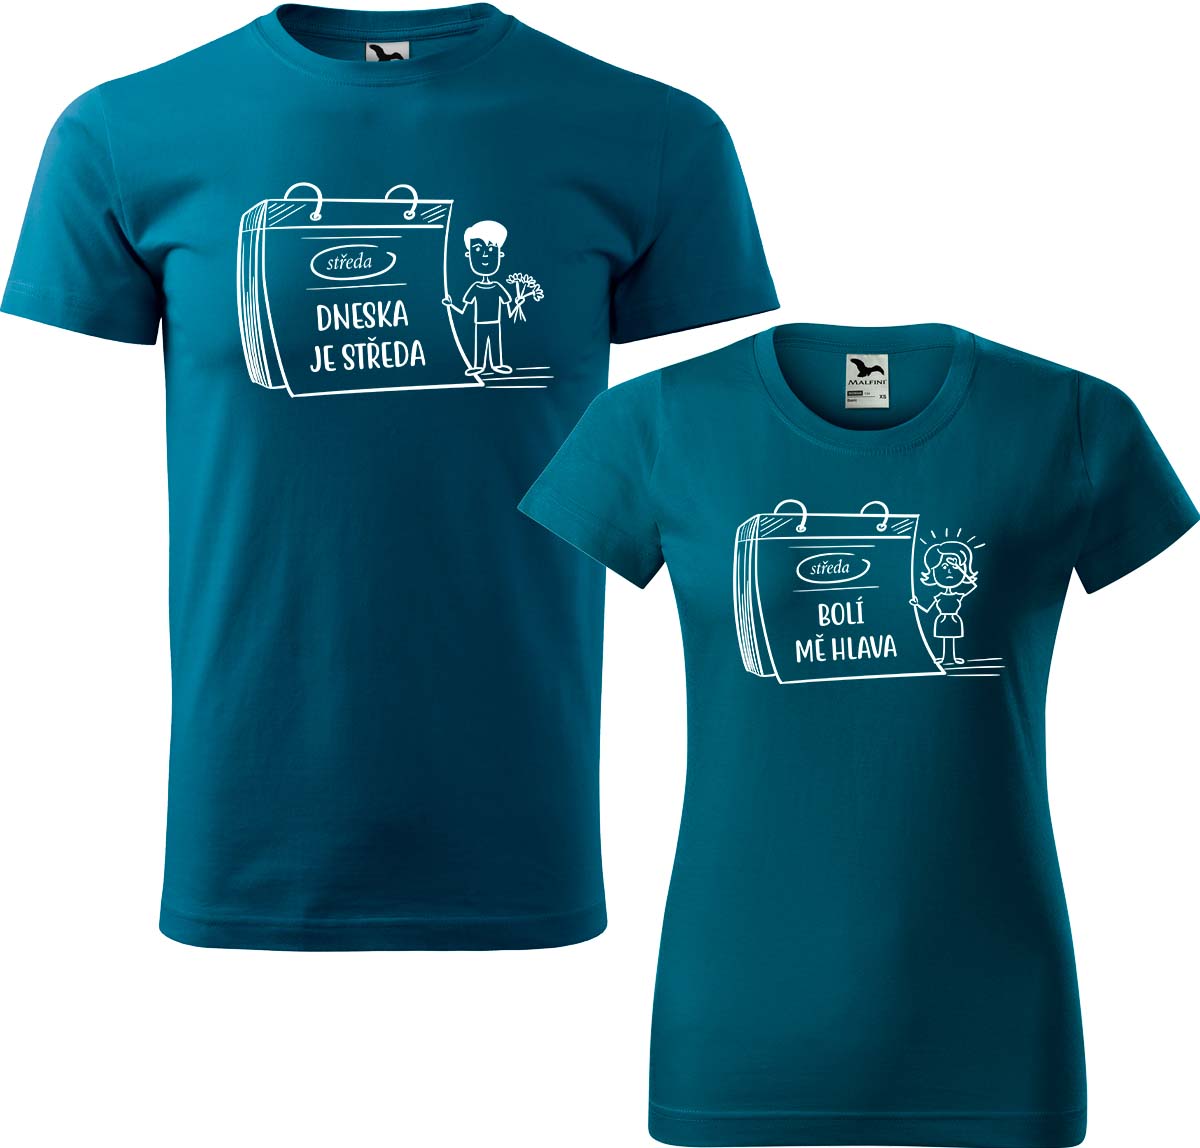 Trička pro páry - Dneska je středa Barva: Petrolejová (93), Velikost dámské tričko: XL, Velikost pánské tričko: XL